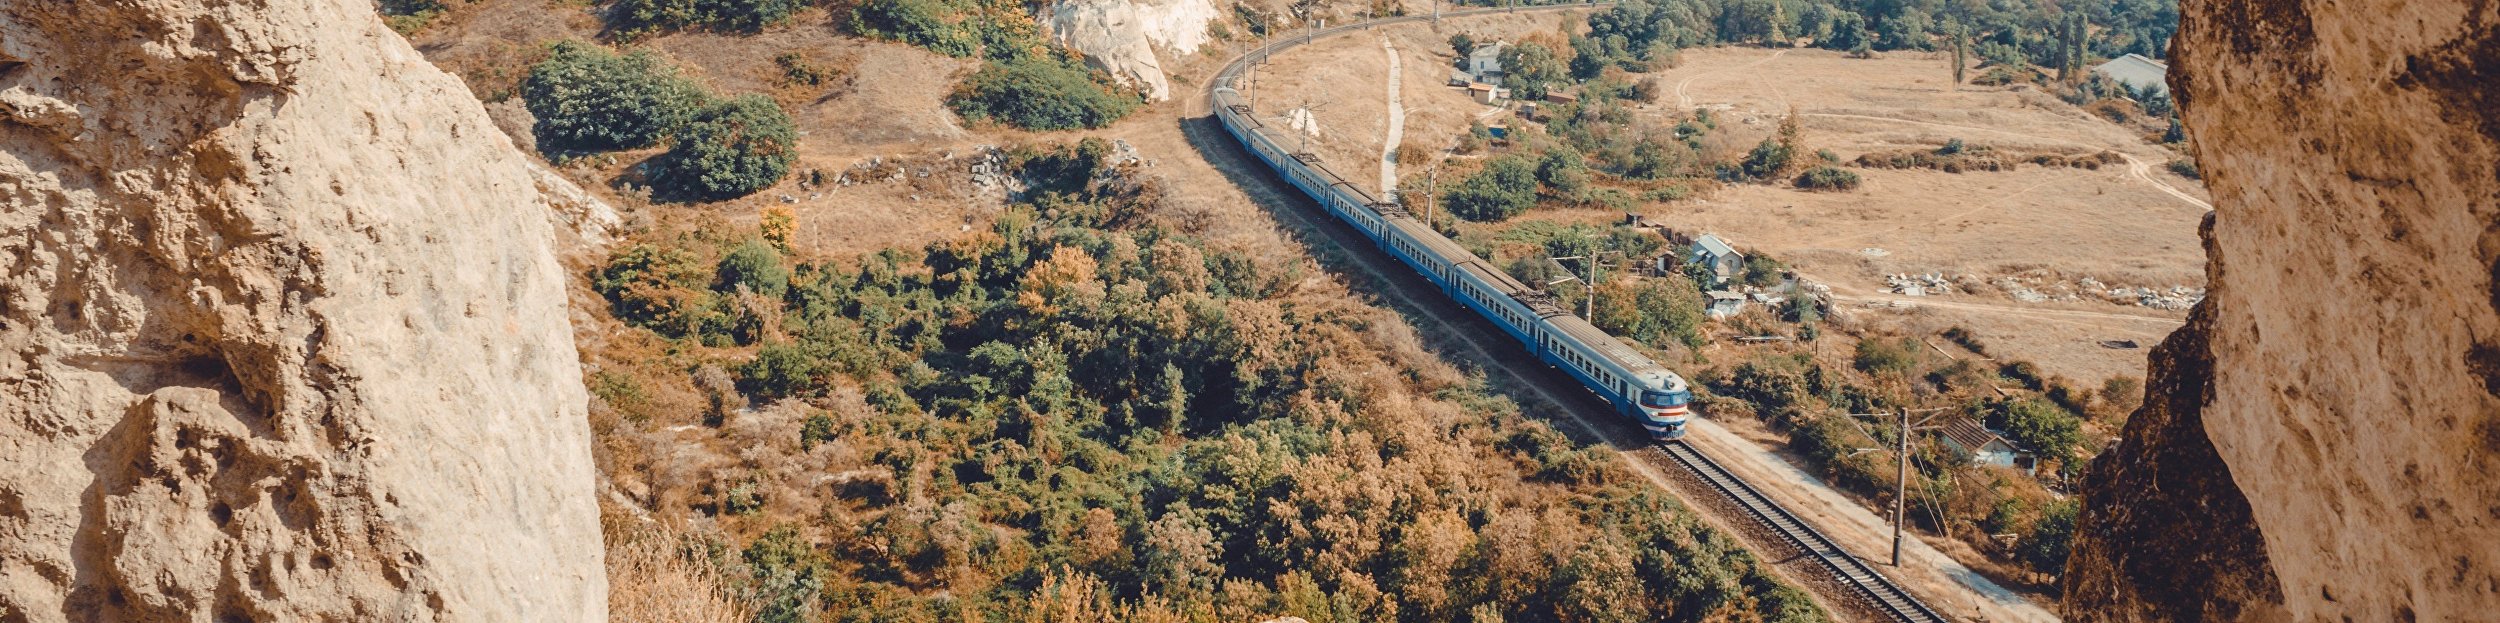 Trains to Crimea: how to make a railway trip